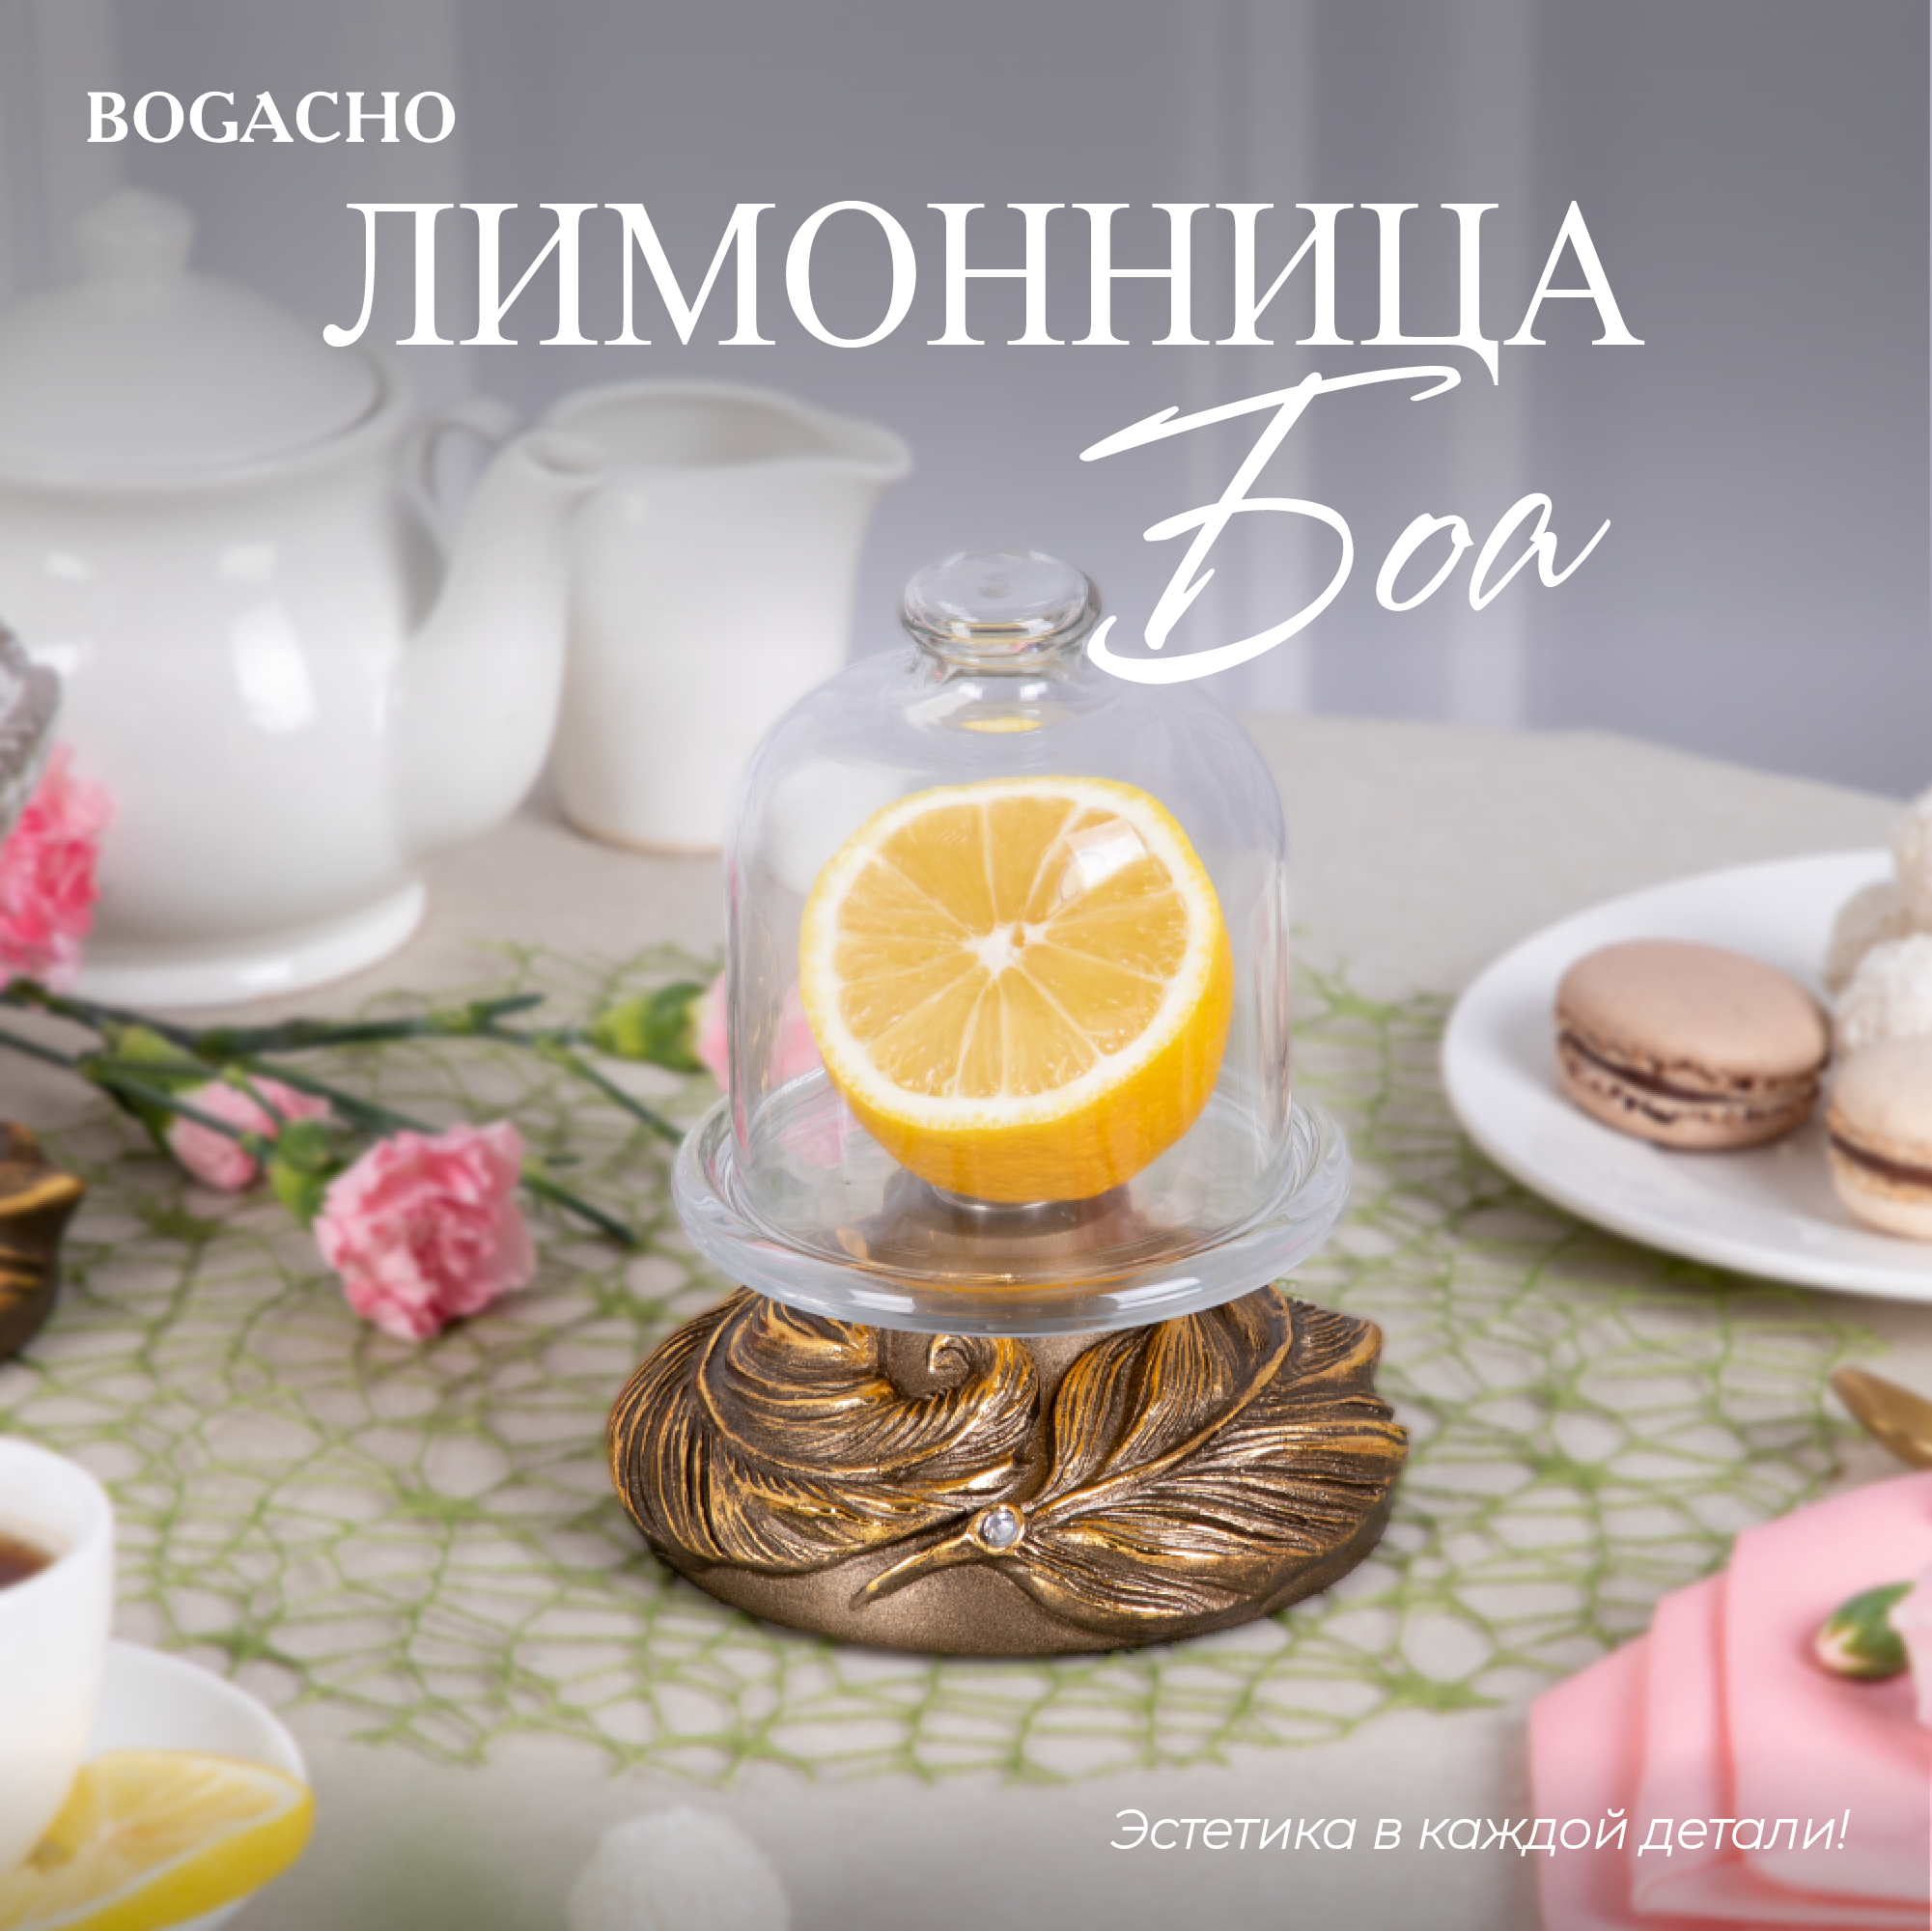 Лимонница с крышкой стекло Bogacho Боа посуда для кухни декор бронзового цвета